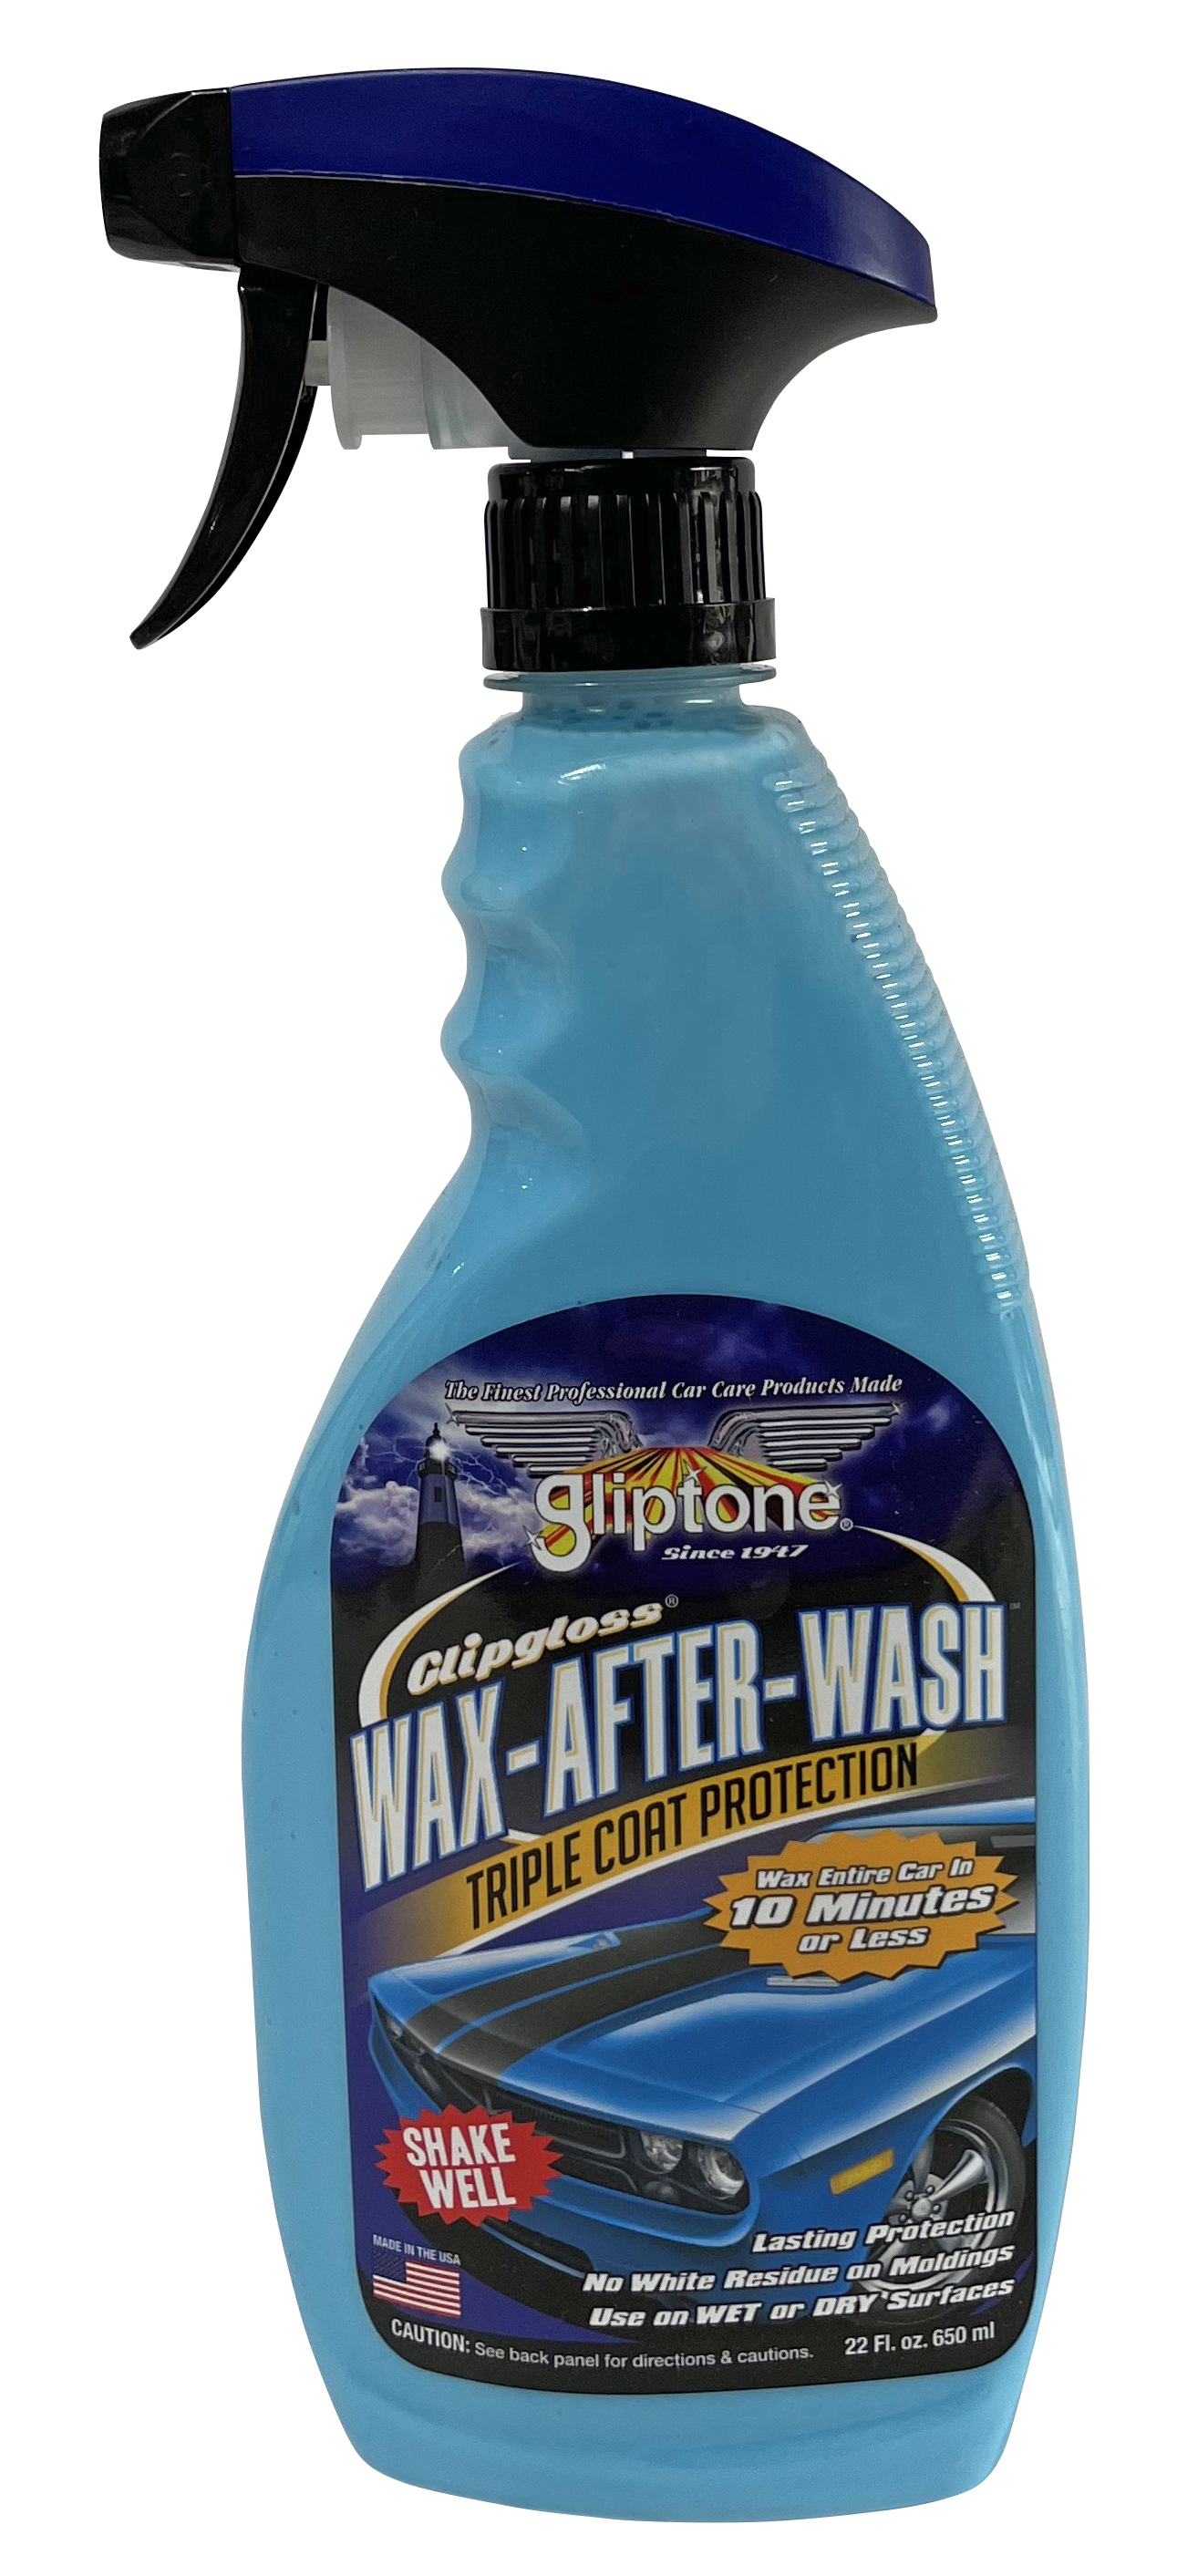 Glipgloss Wax After Wash